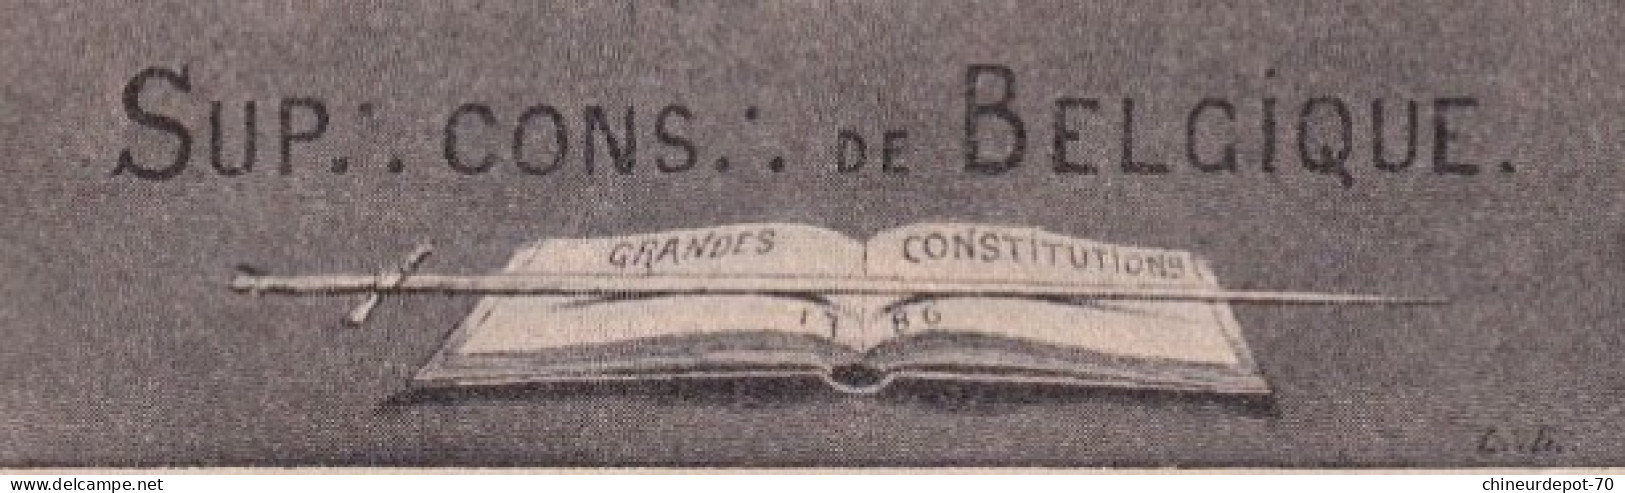 CONFERENCE INTERNATIONALE D DE 1907 SUP CONS DE BELGIQUE GRANDES CONSTITUTIONS - Istituzioni Internazionali